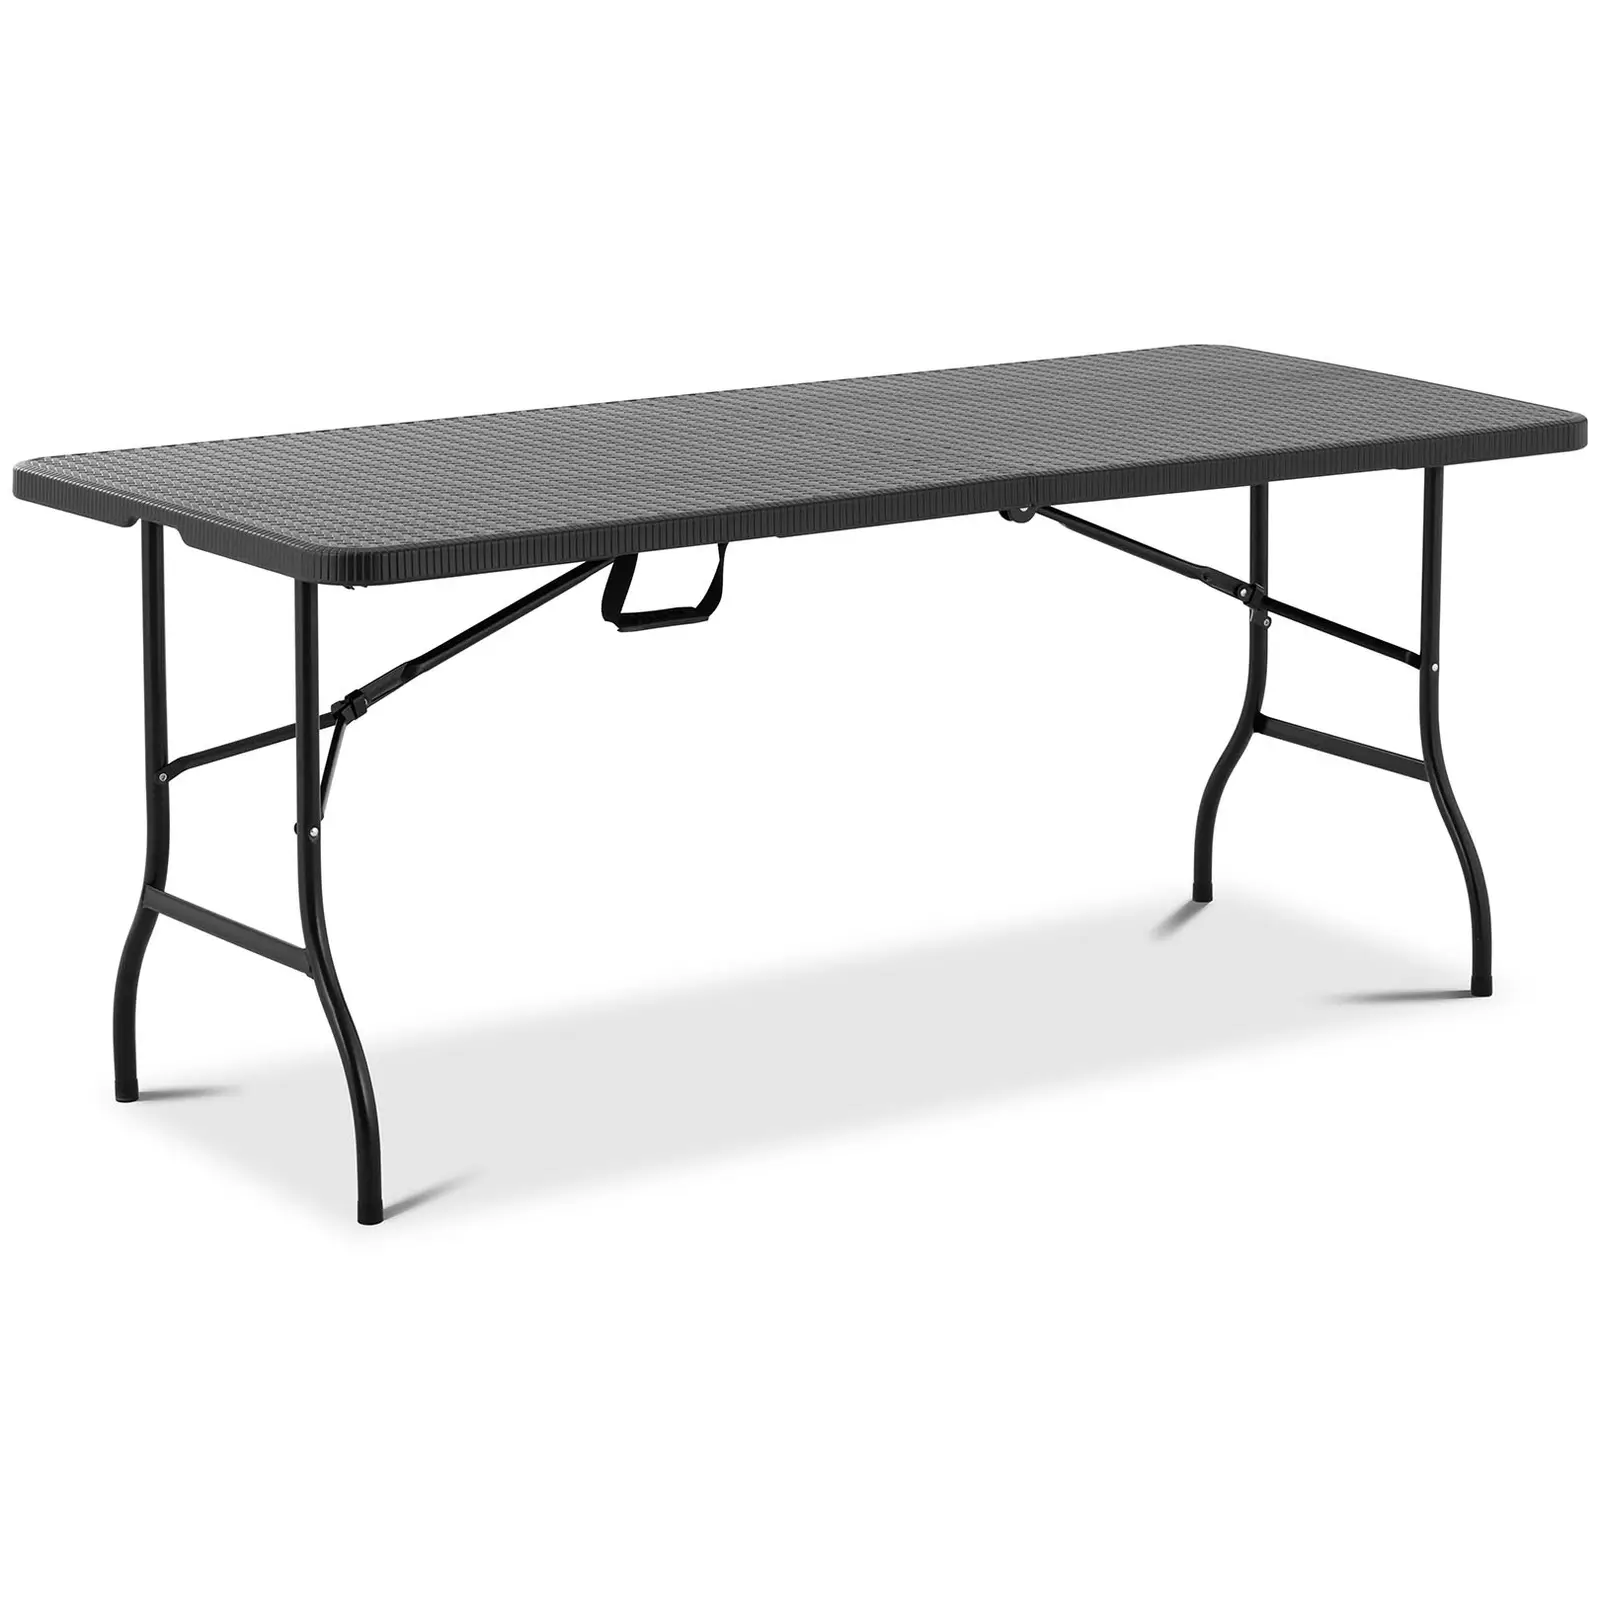 Table pliante - 1 830 x 750 x 740 mm - Royal Catering - 150 kg - Intérieur/extérieur - Blacke